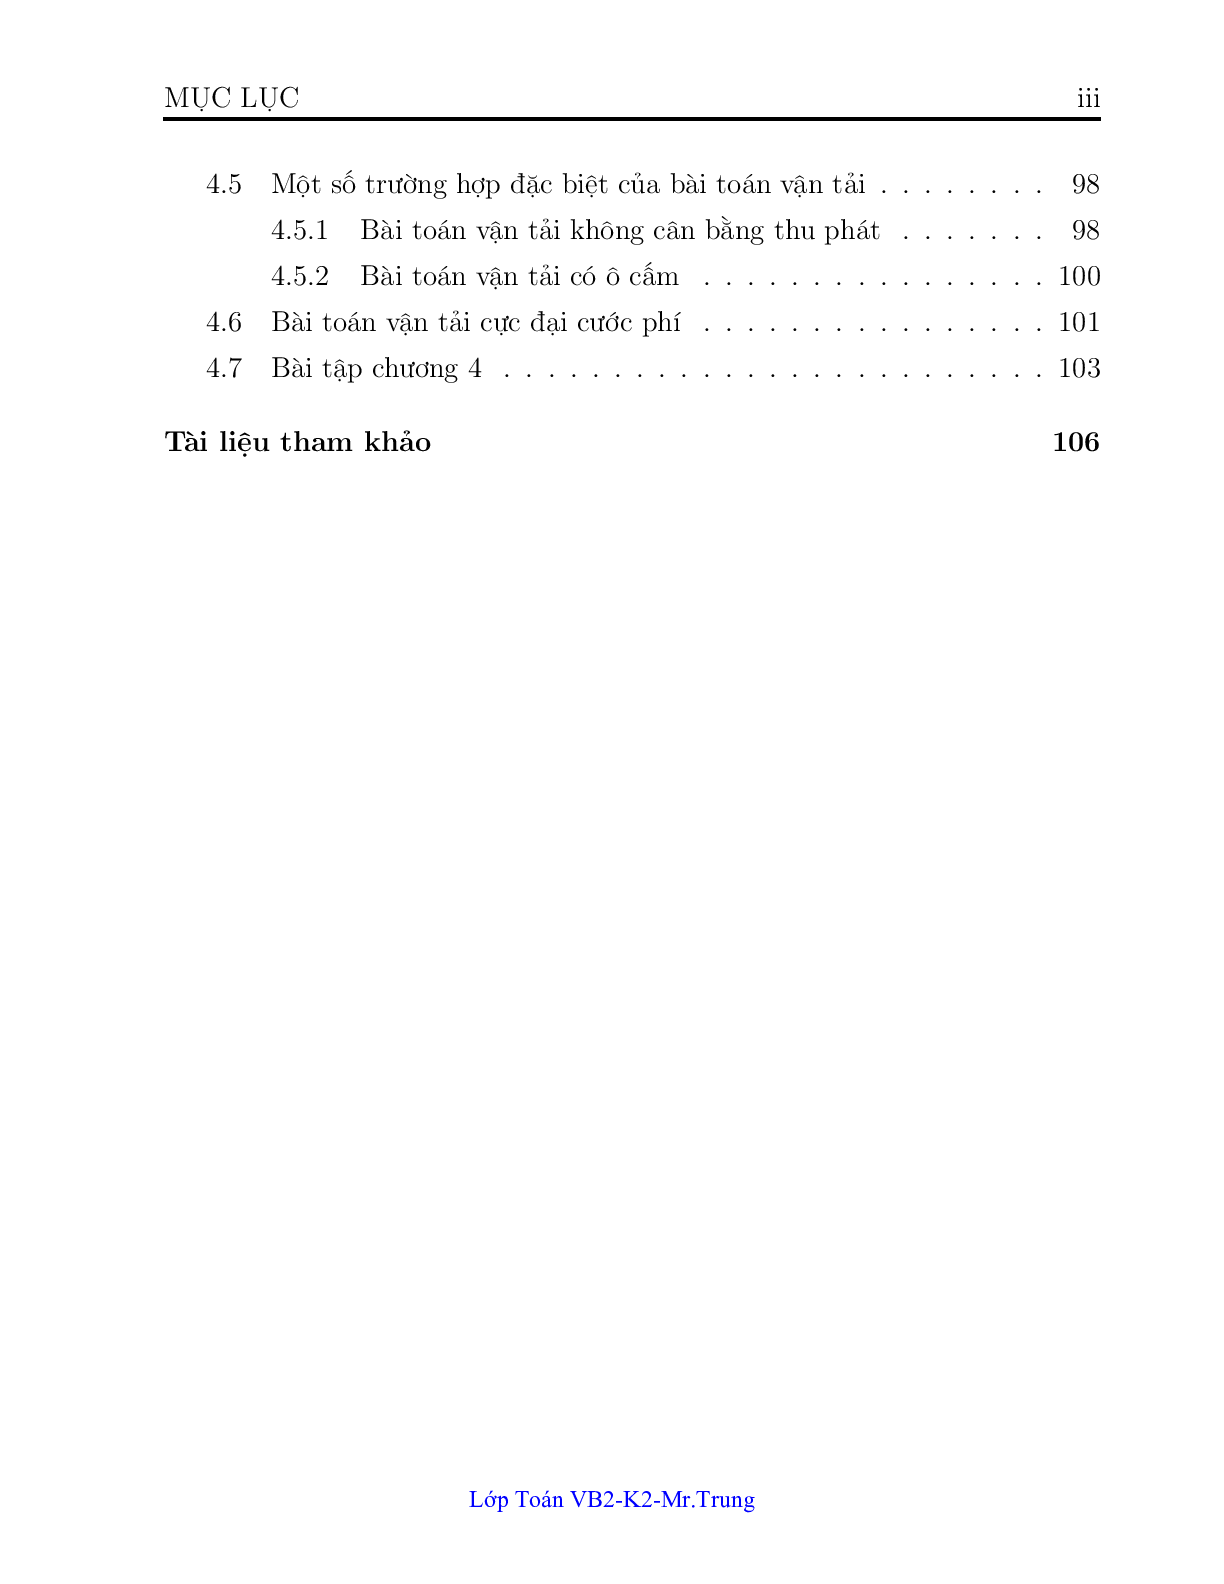 Ngân hàng bài toán Quy hoạch tuyến tính (có lời giải) | Trường Đại học Công nghiệp Thành phố Hồ Chí Minh (trang 3)